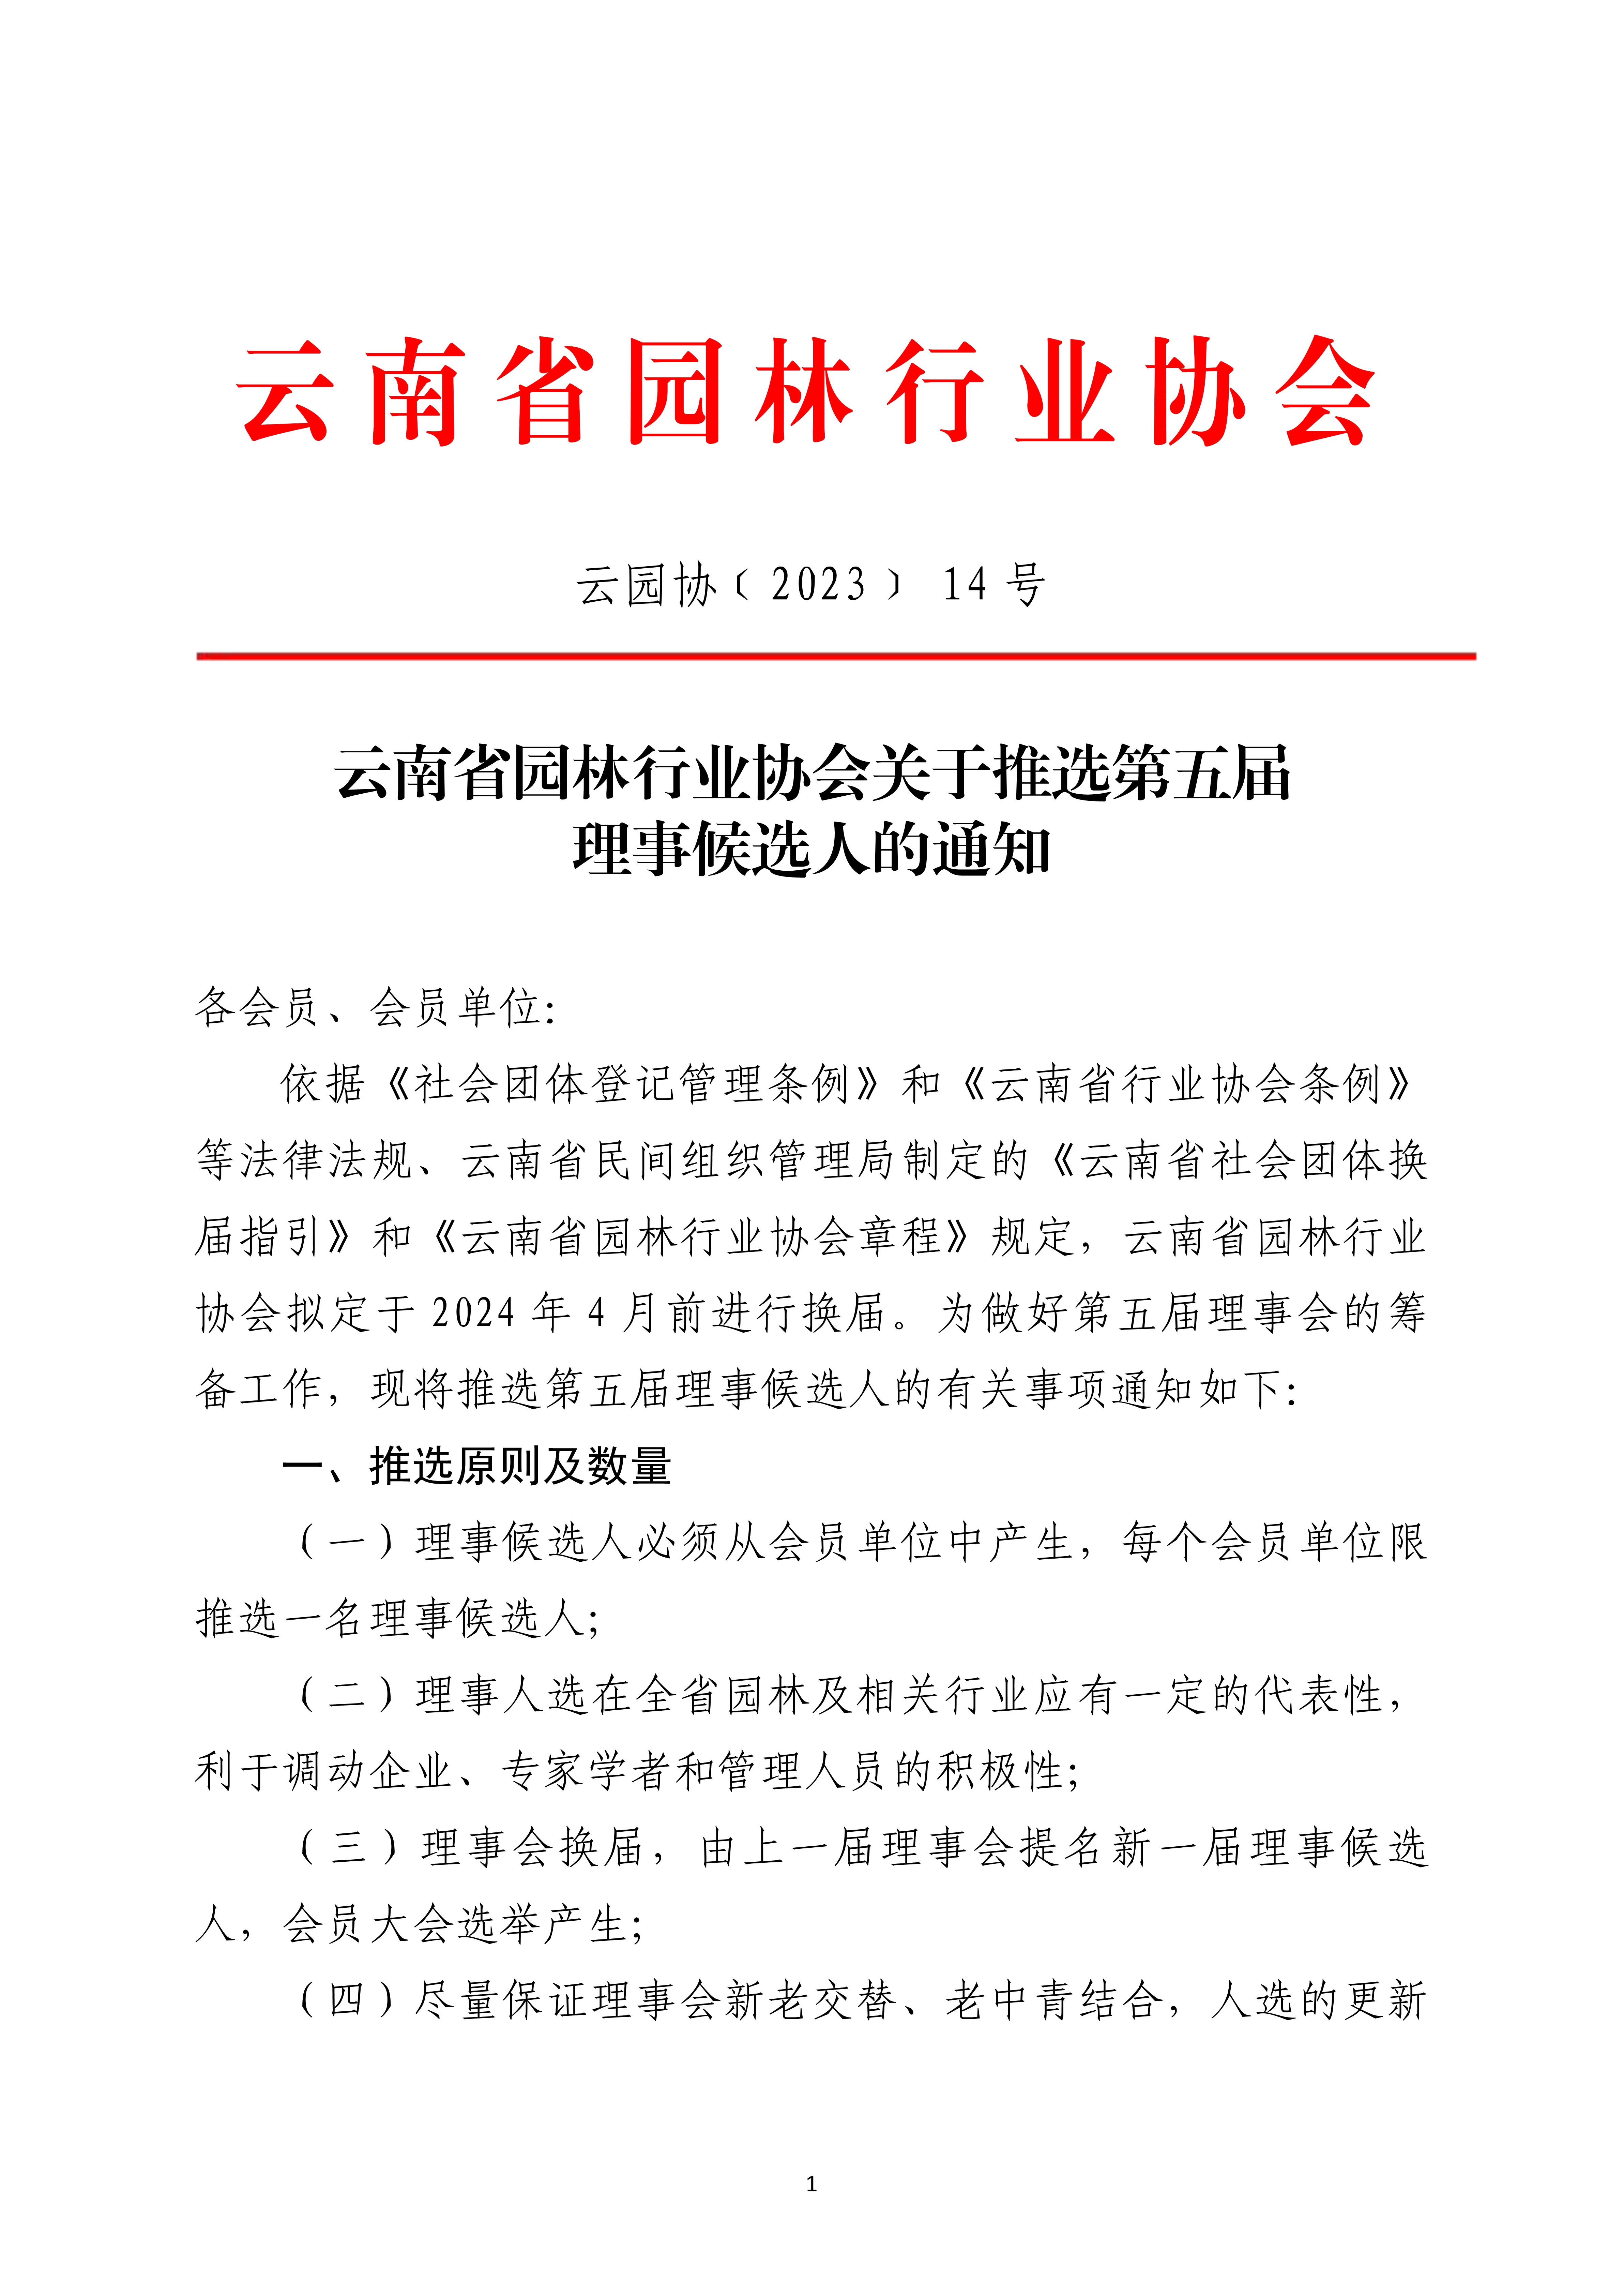 新2官网关于推选第五届理事候选人的通知_1.jpg